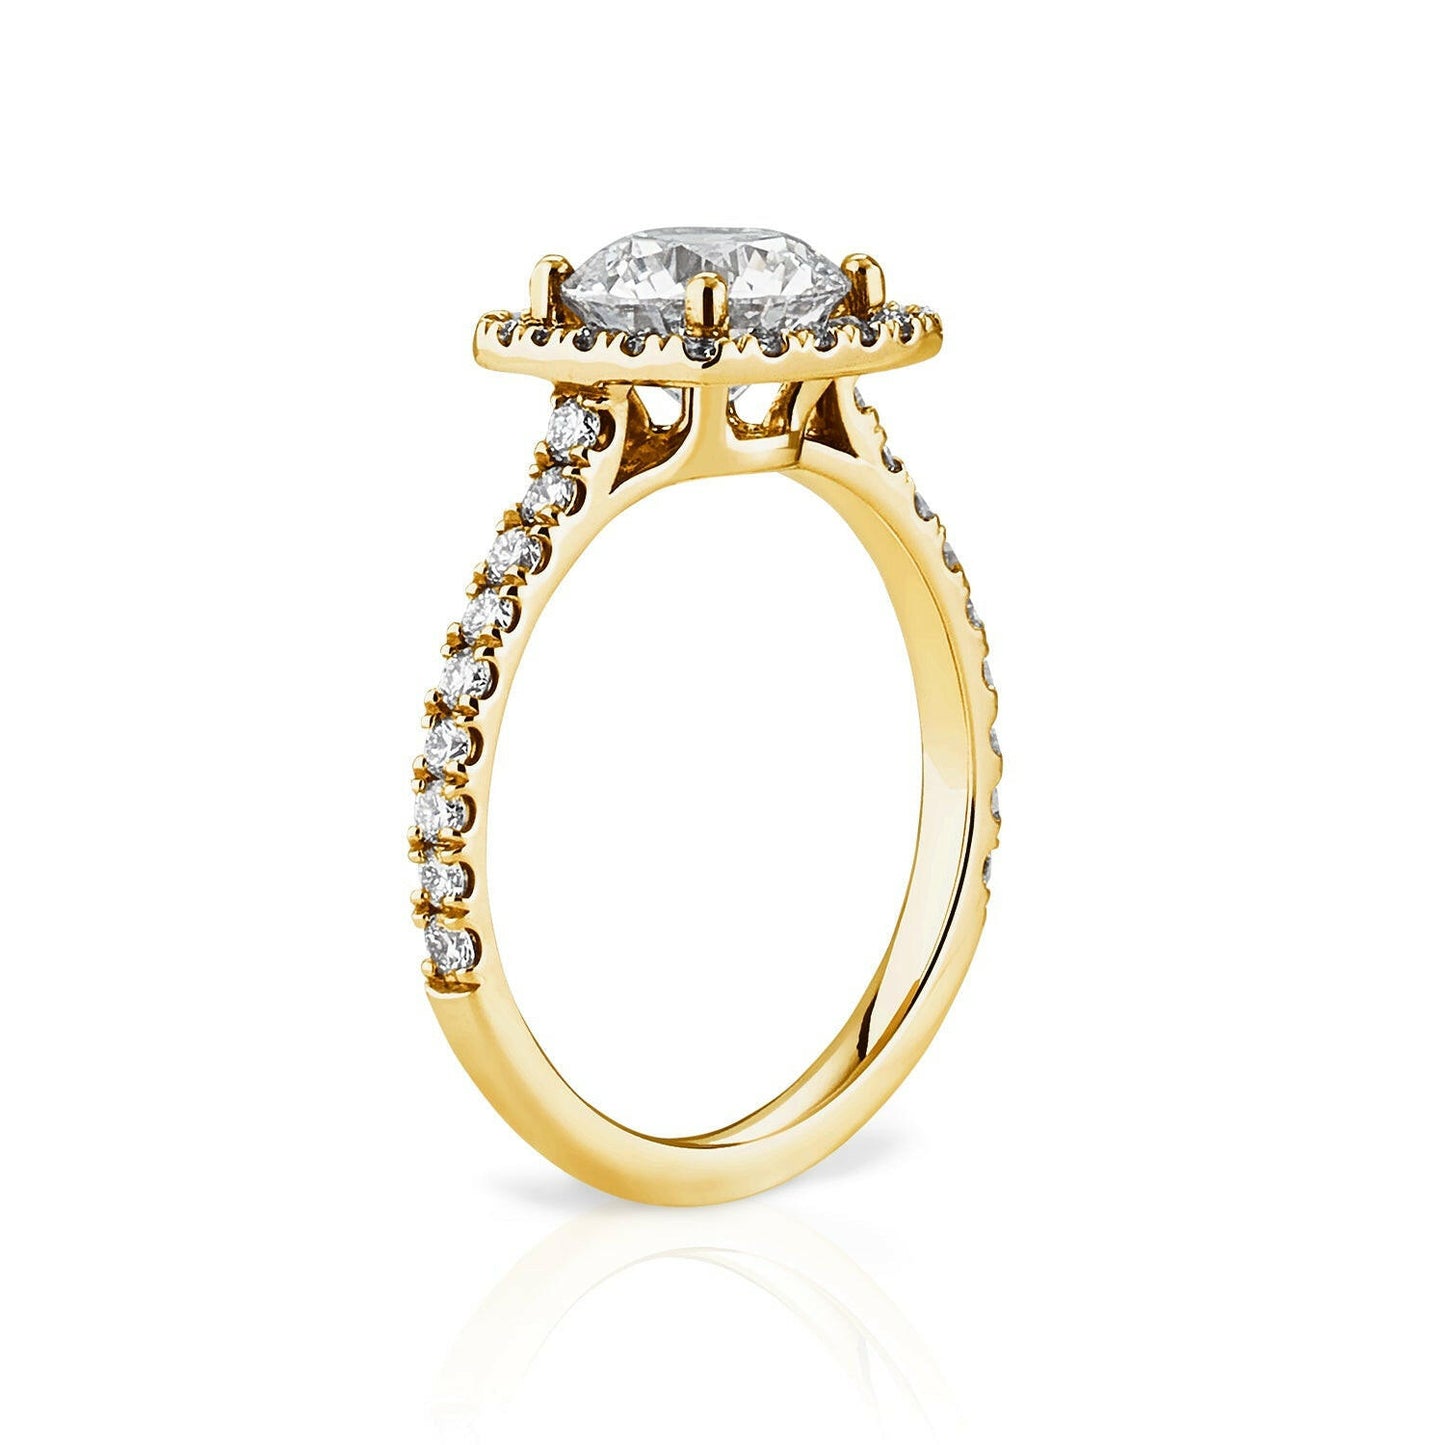 Ruby ist ein gelbgoldner Ring aus recyceltem Gelbgold und labor Diamanten.